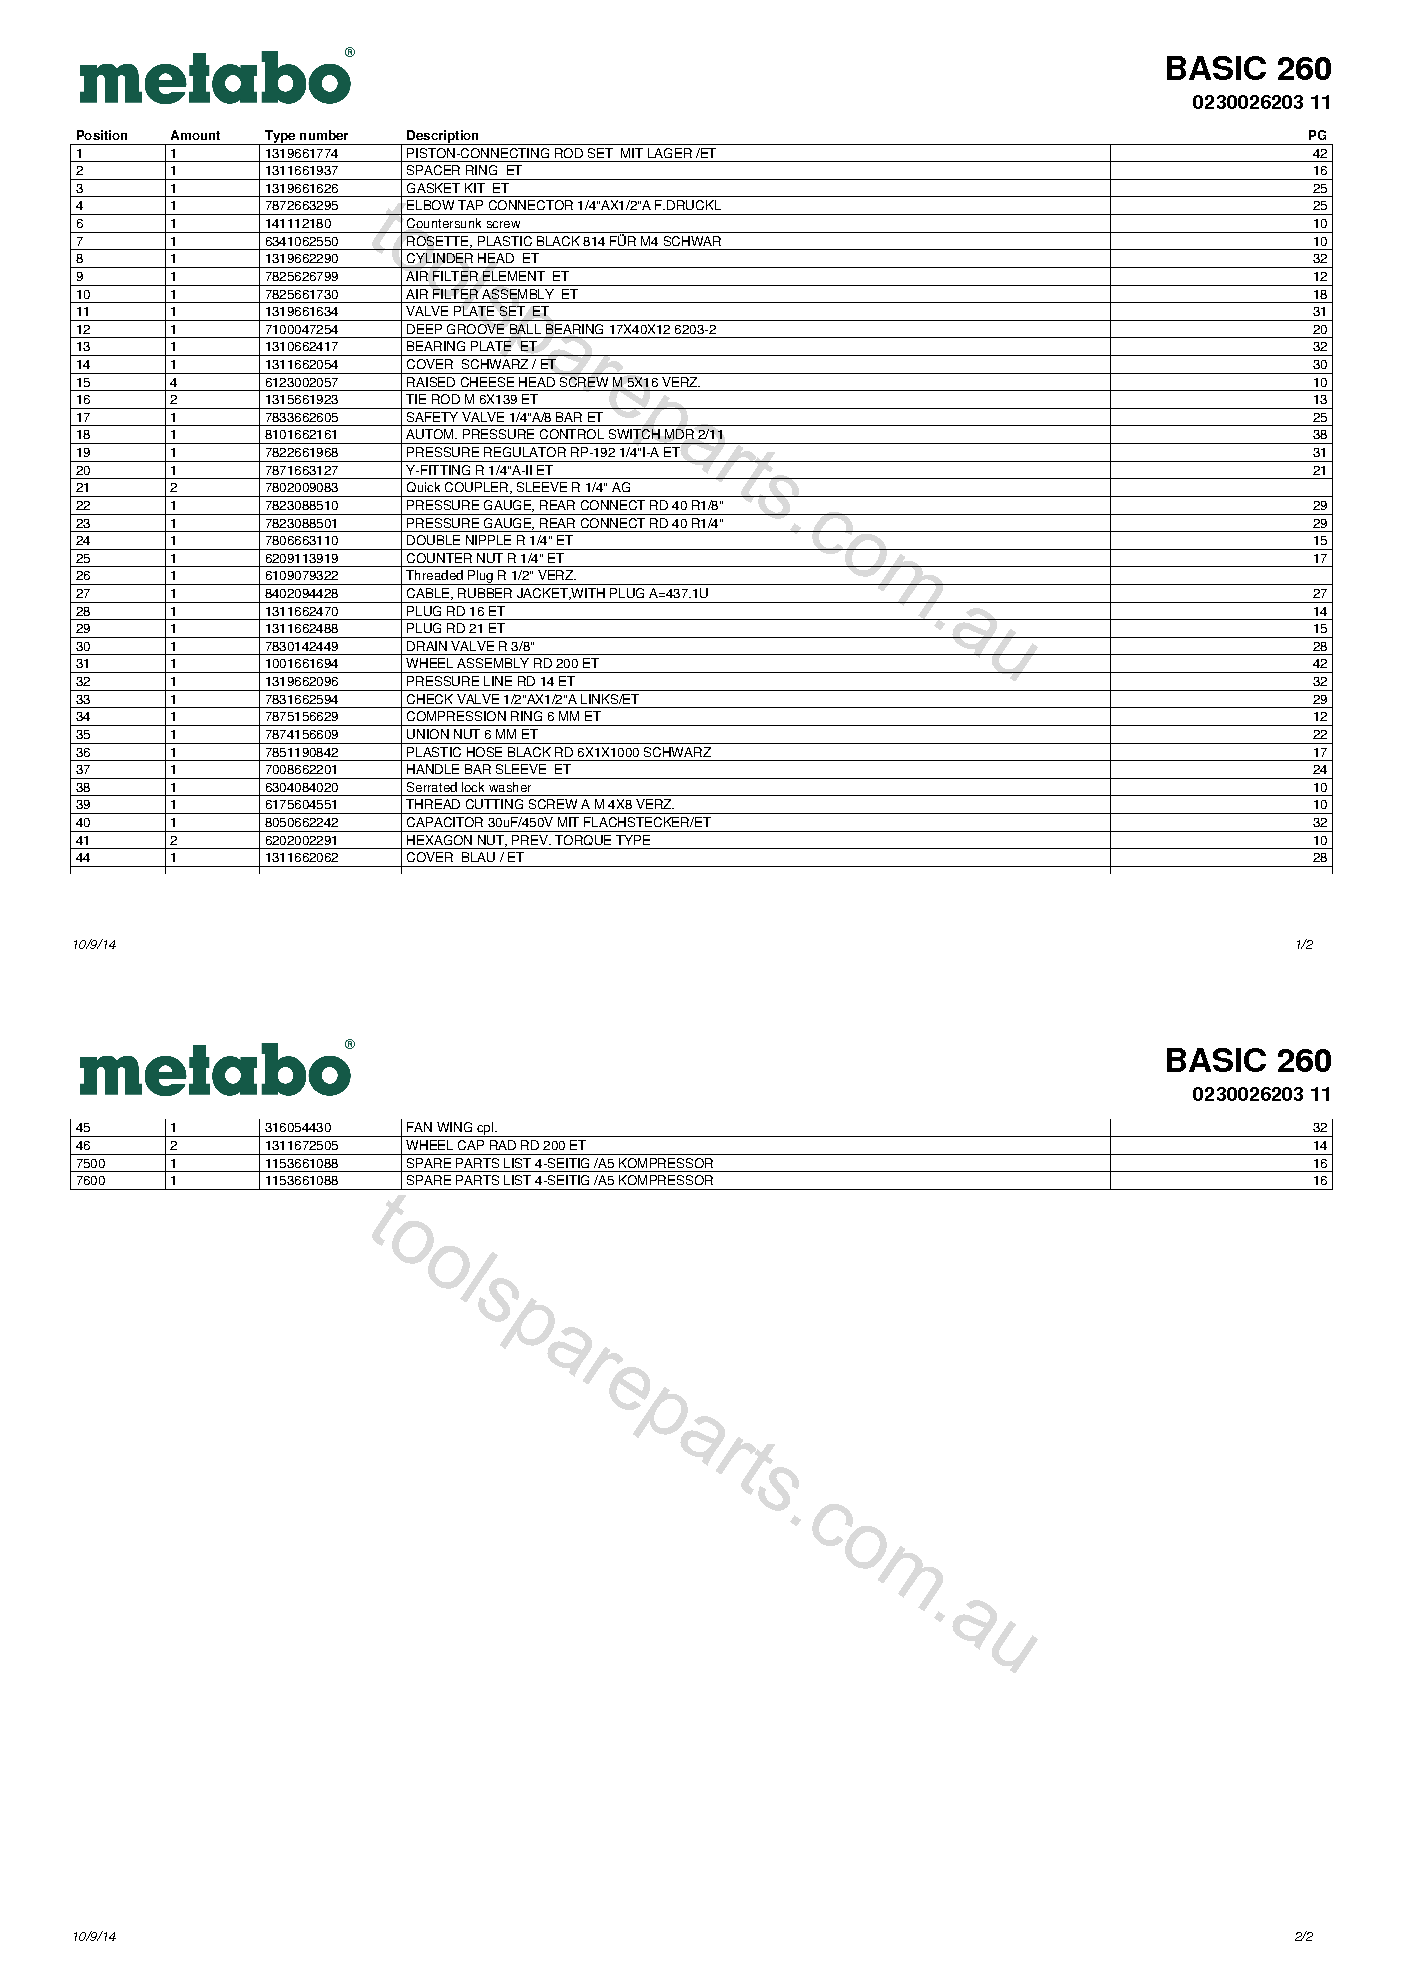 Metabo BASIC 260 0230026203 11  Diagram 1